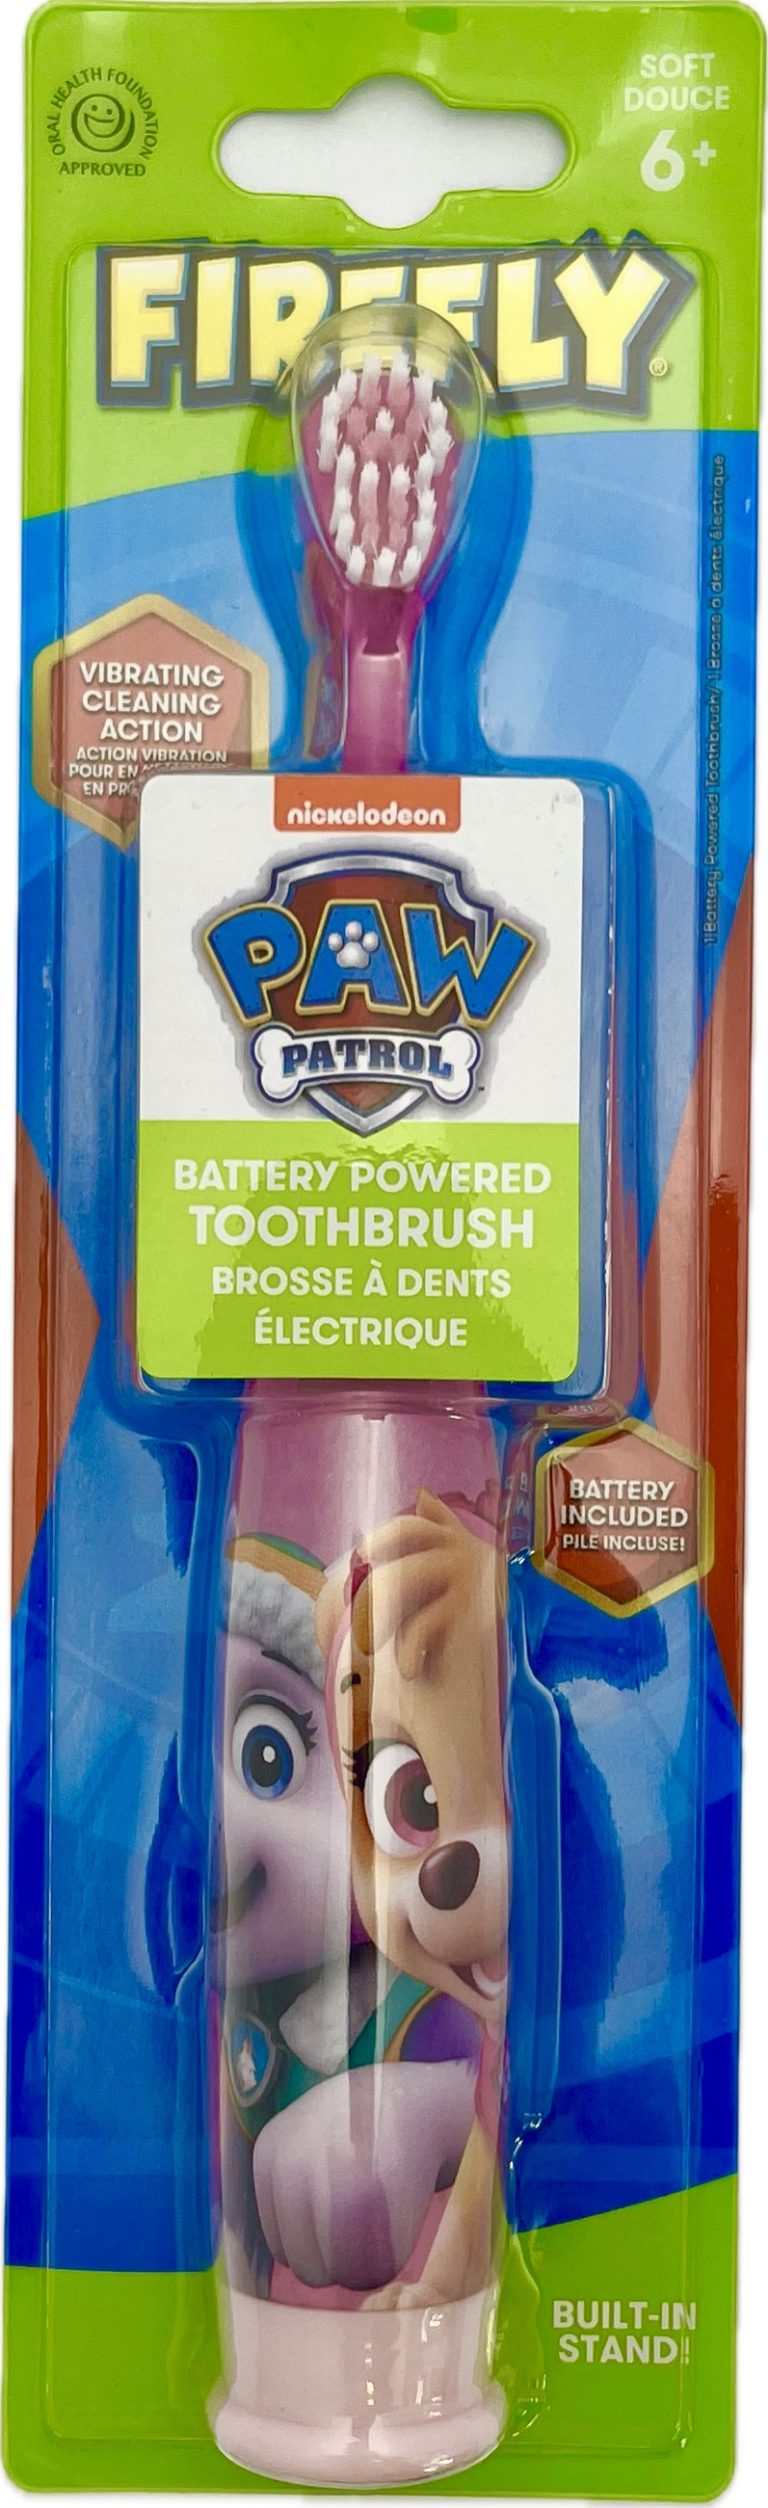 Bērnu elektriskā zobu birste – Firefly – PAW Patrol – 6+